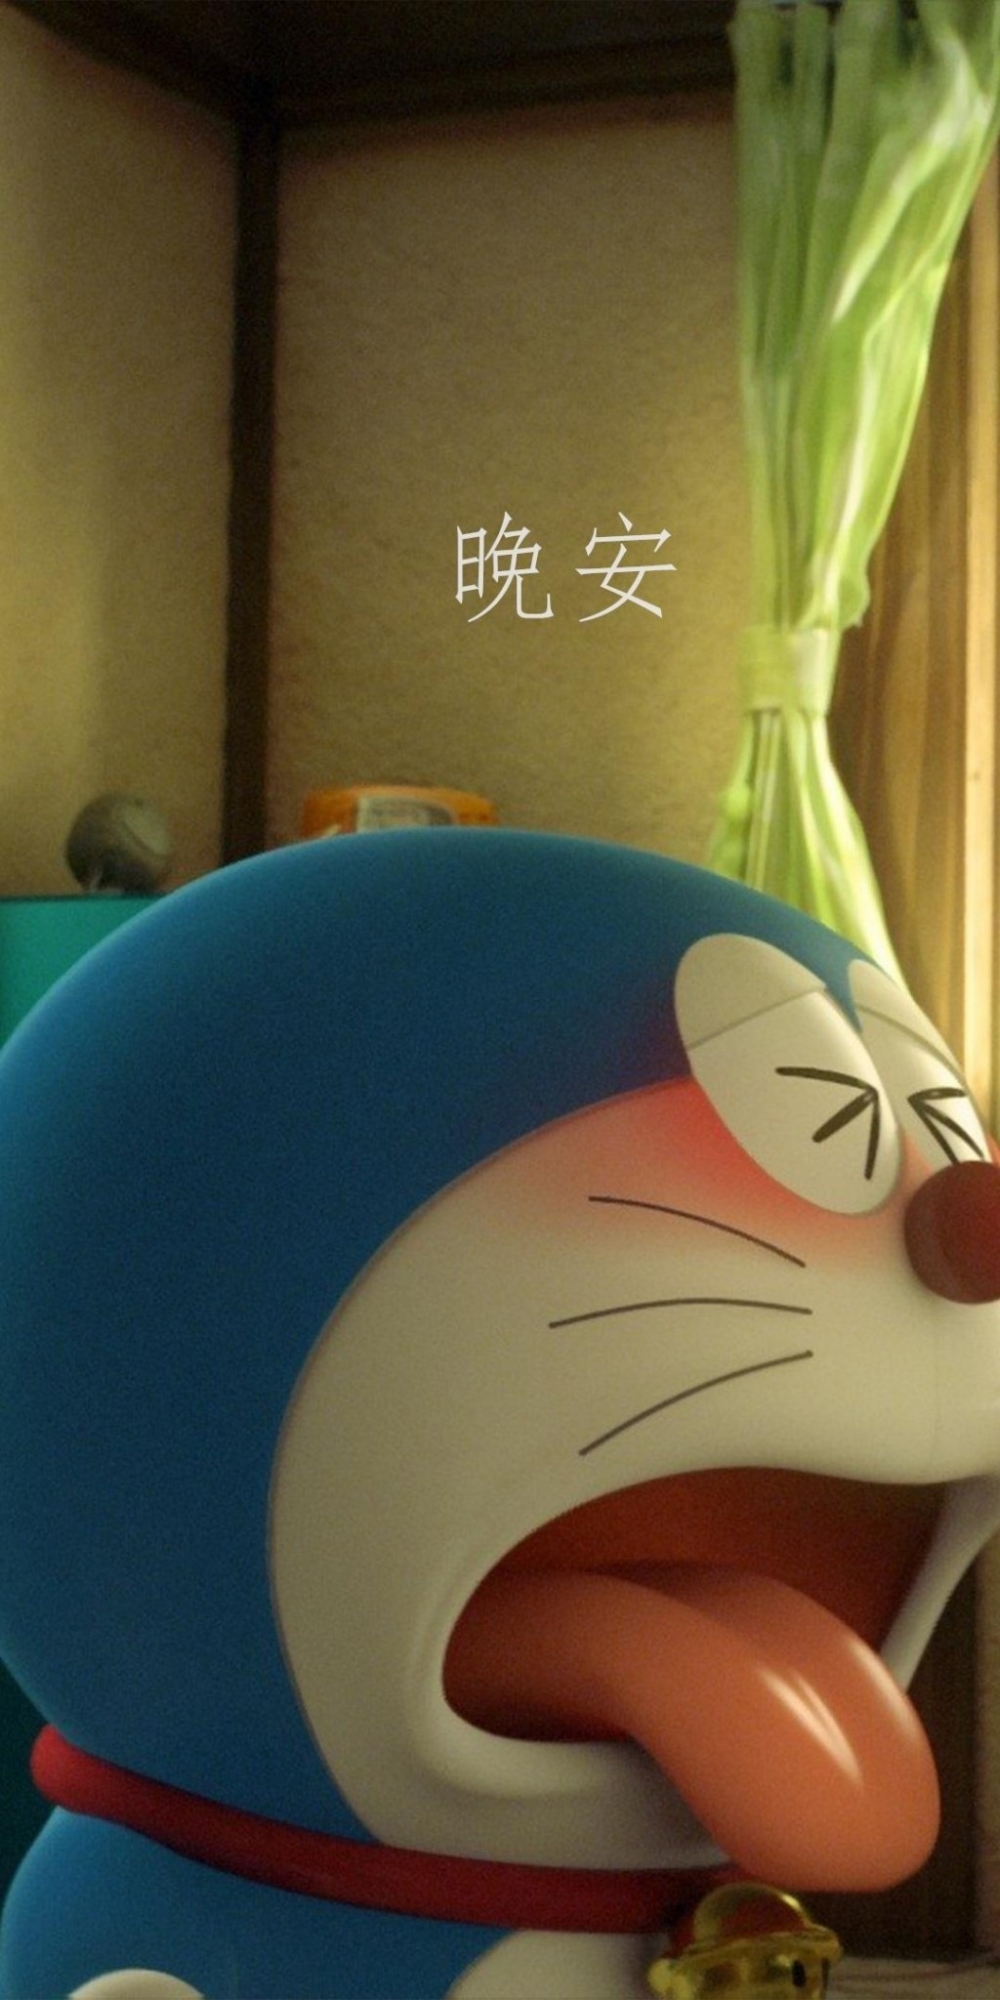 日本卡通动漫哆啦A梦晚安情感心情文字说说语录图片